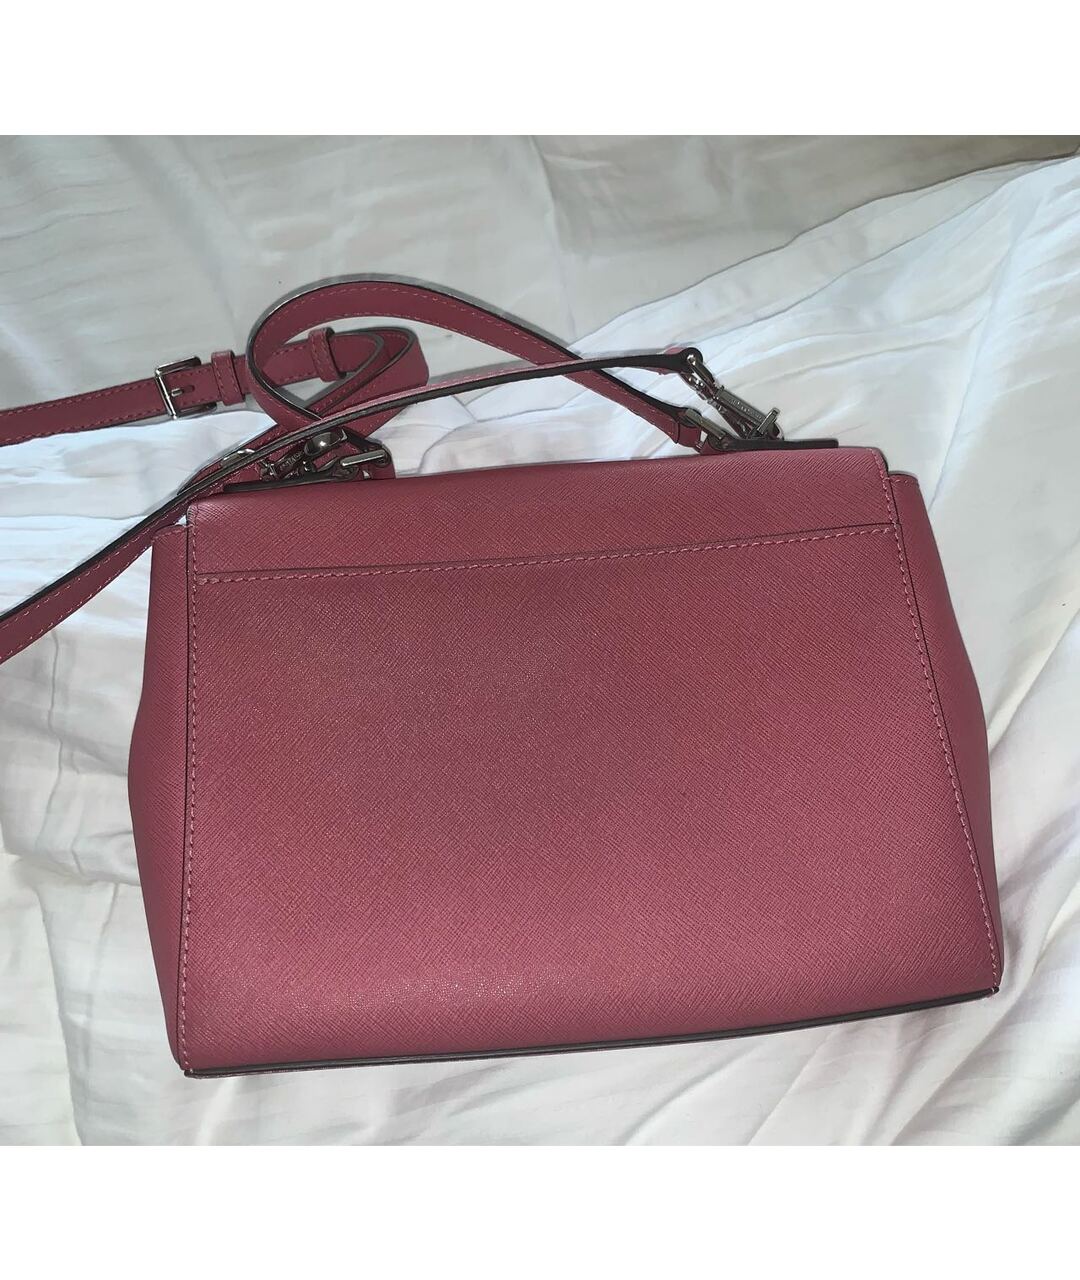 MICHAEL KORS Розовая кожаная сумка с короткими ручками, фото 3